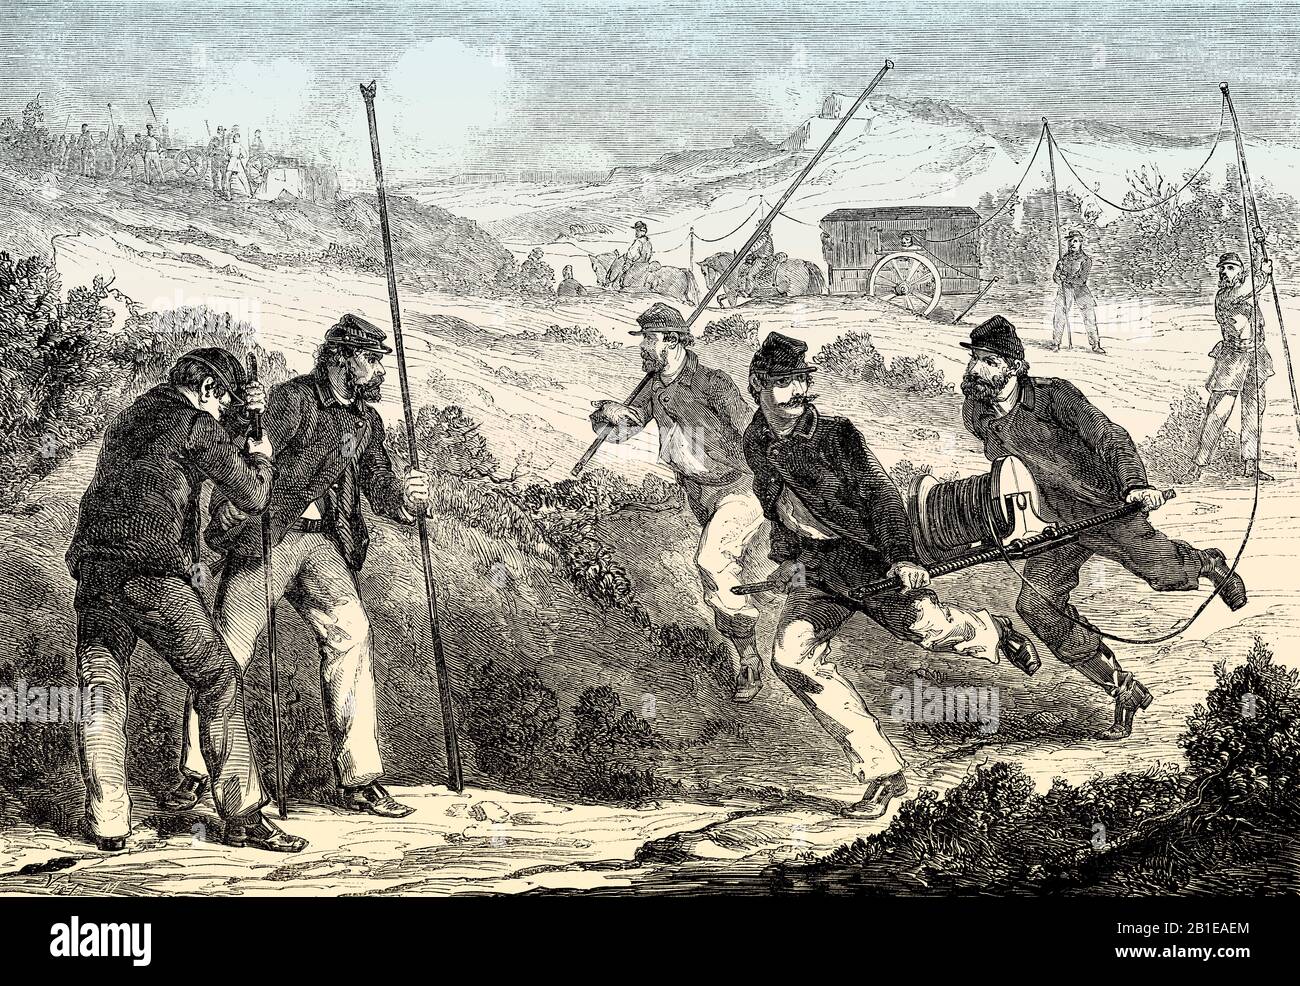 Militärtelegrafie, Schlacht von Antietam, amerikanischer Bürgerkrieg, Maryland, im Jahr 1862 Stockfoto